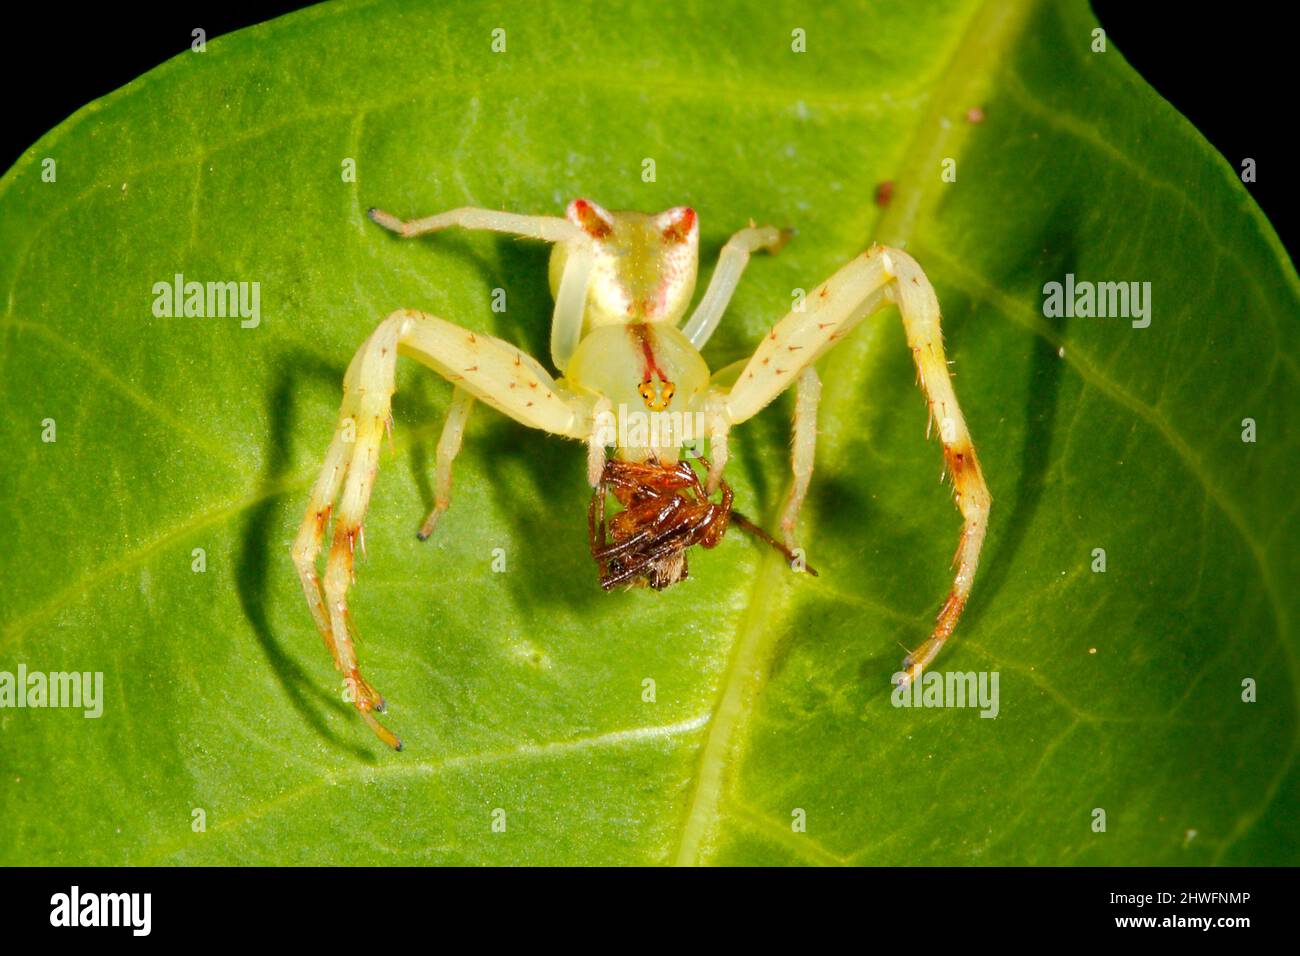 Araignée de crabe à extrémité rouge, Sidymella rubrosignata. Araignée tenant la proie. Endémique à l'Australie. Coffs Harbour, Nouvelle-Galles du Sud, Australie Banque D'Images